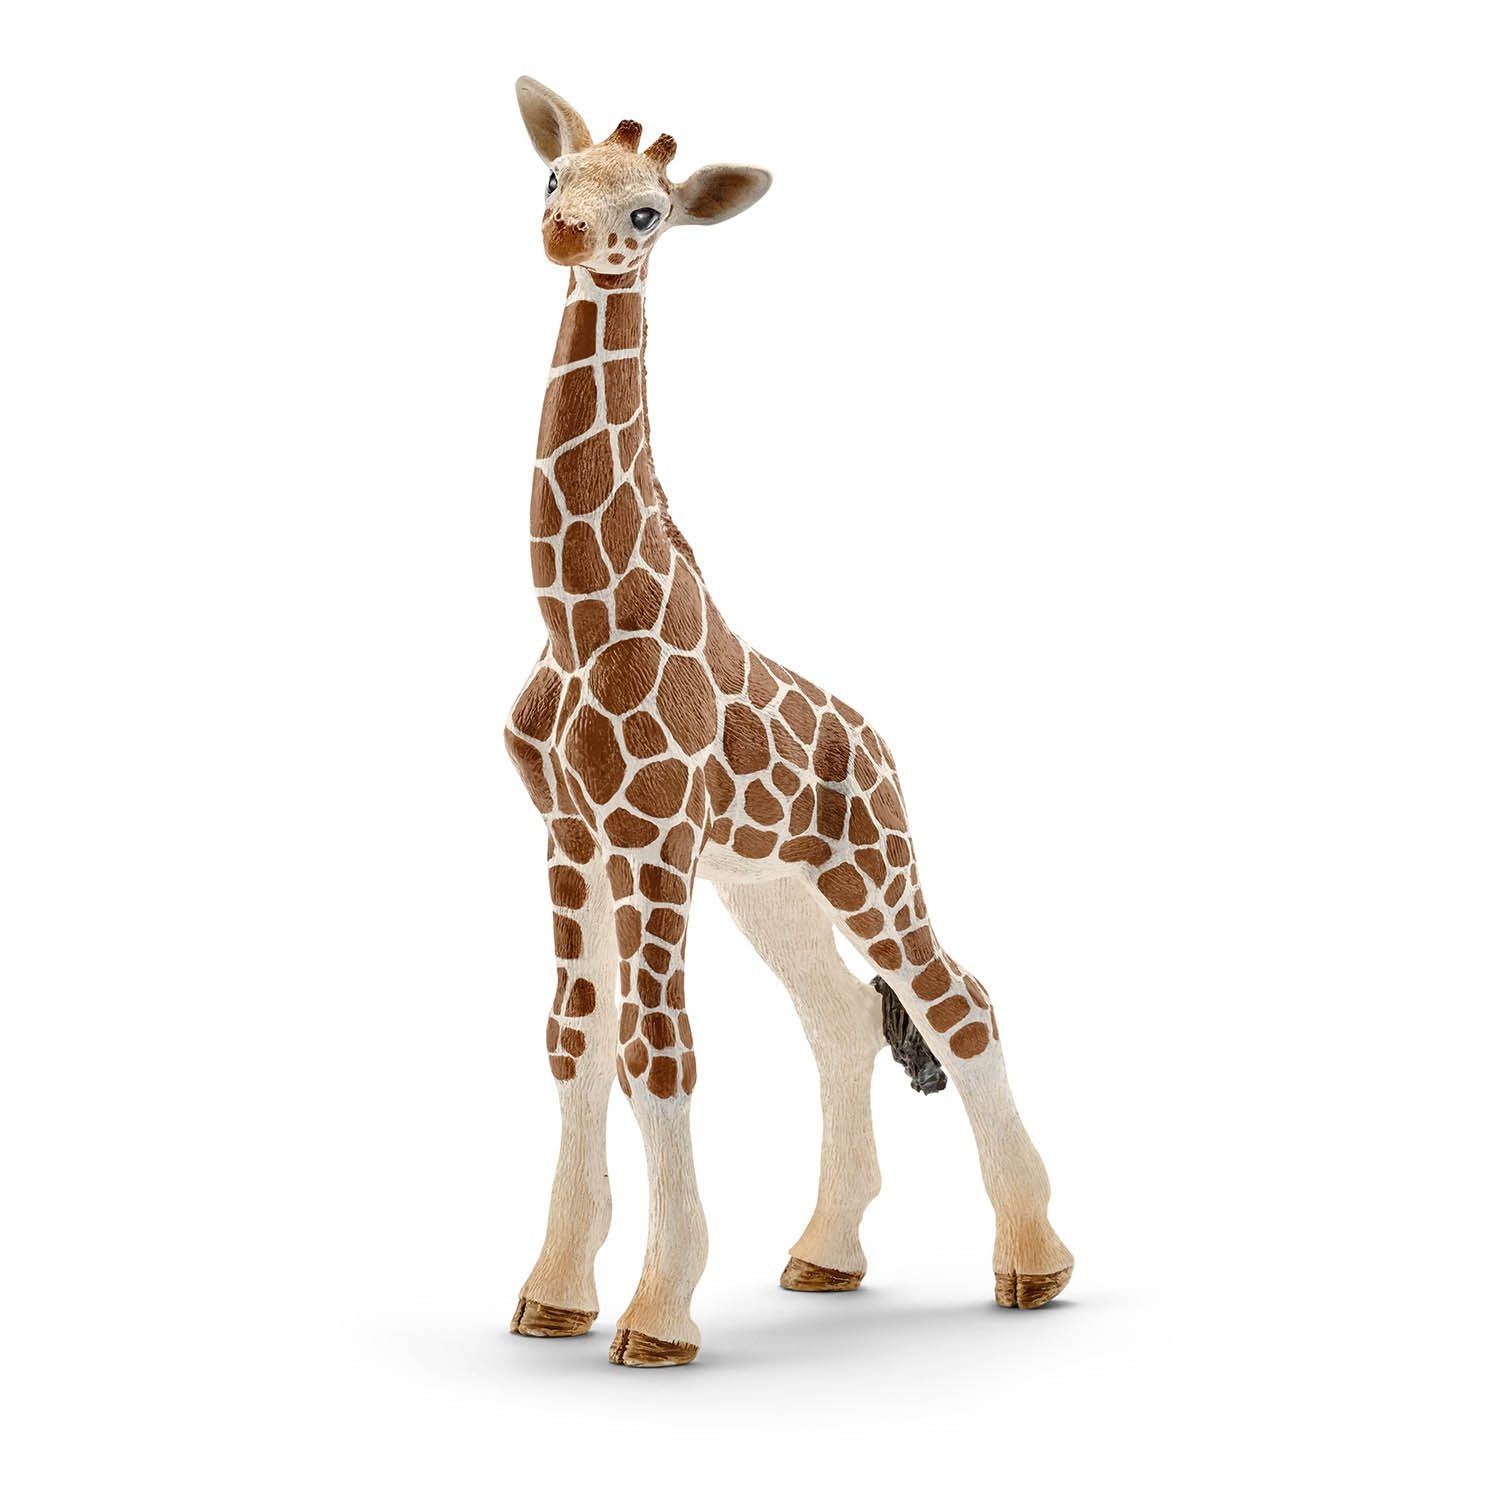 Baby giraf Schleich feest decoratie speelgoedfiguur deco